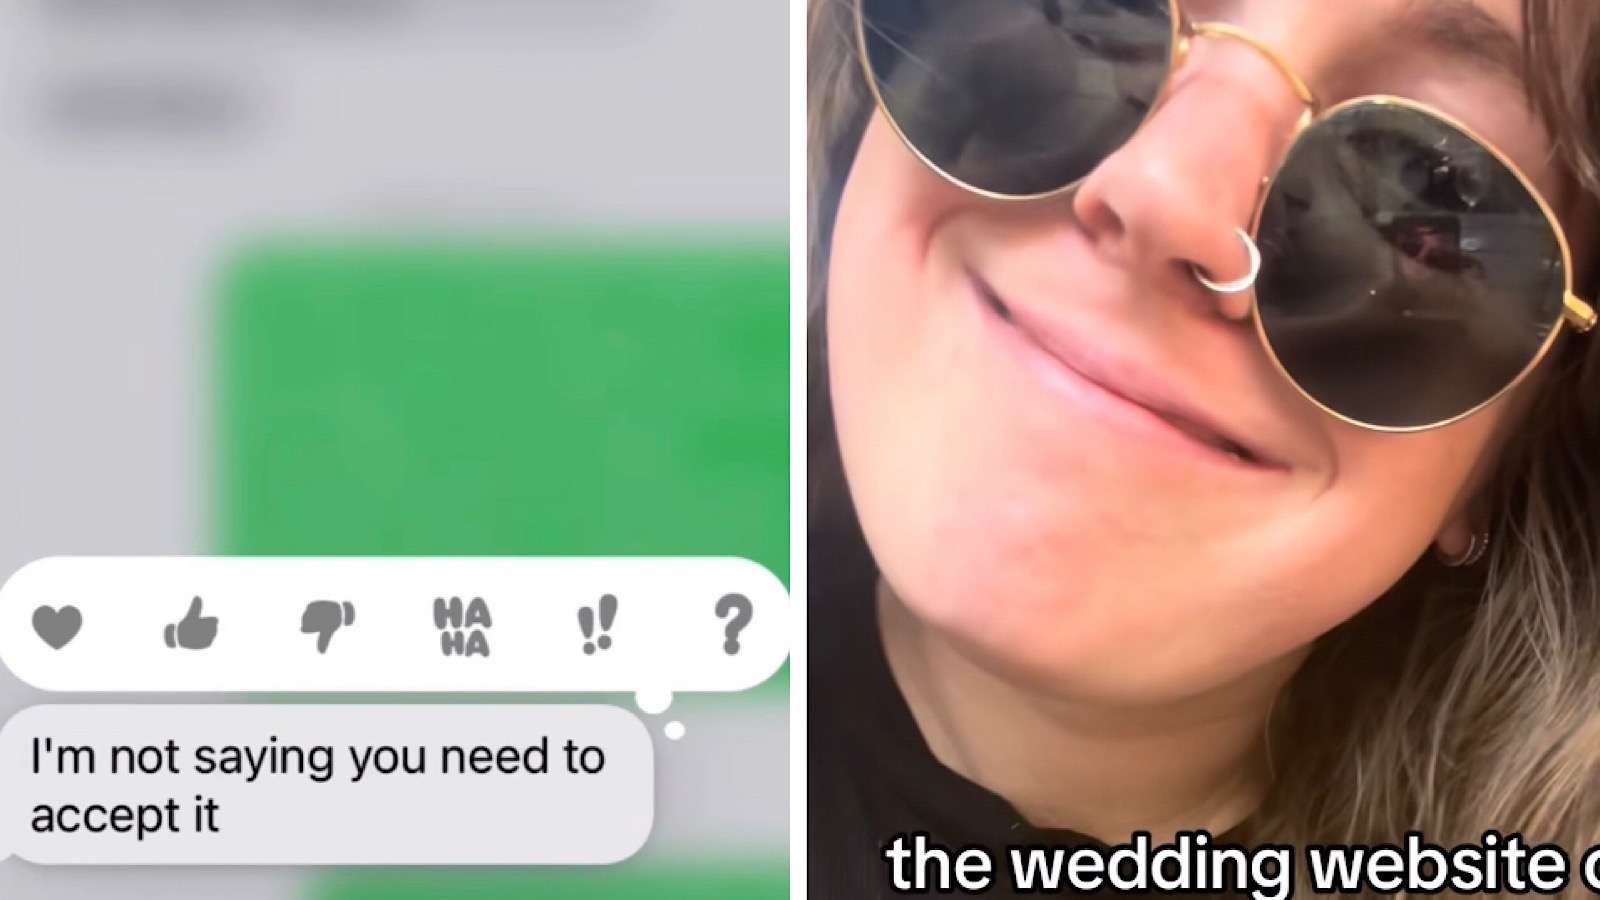 woman found her boyfriend's wedding registry behind her back